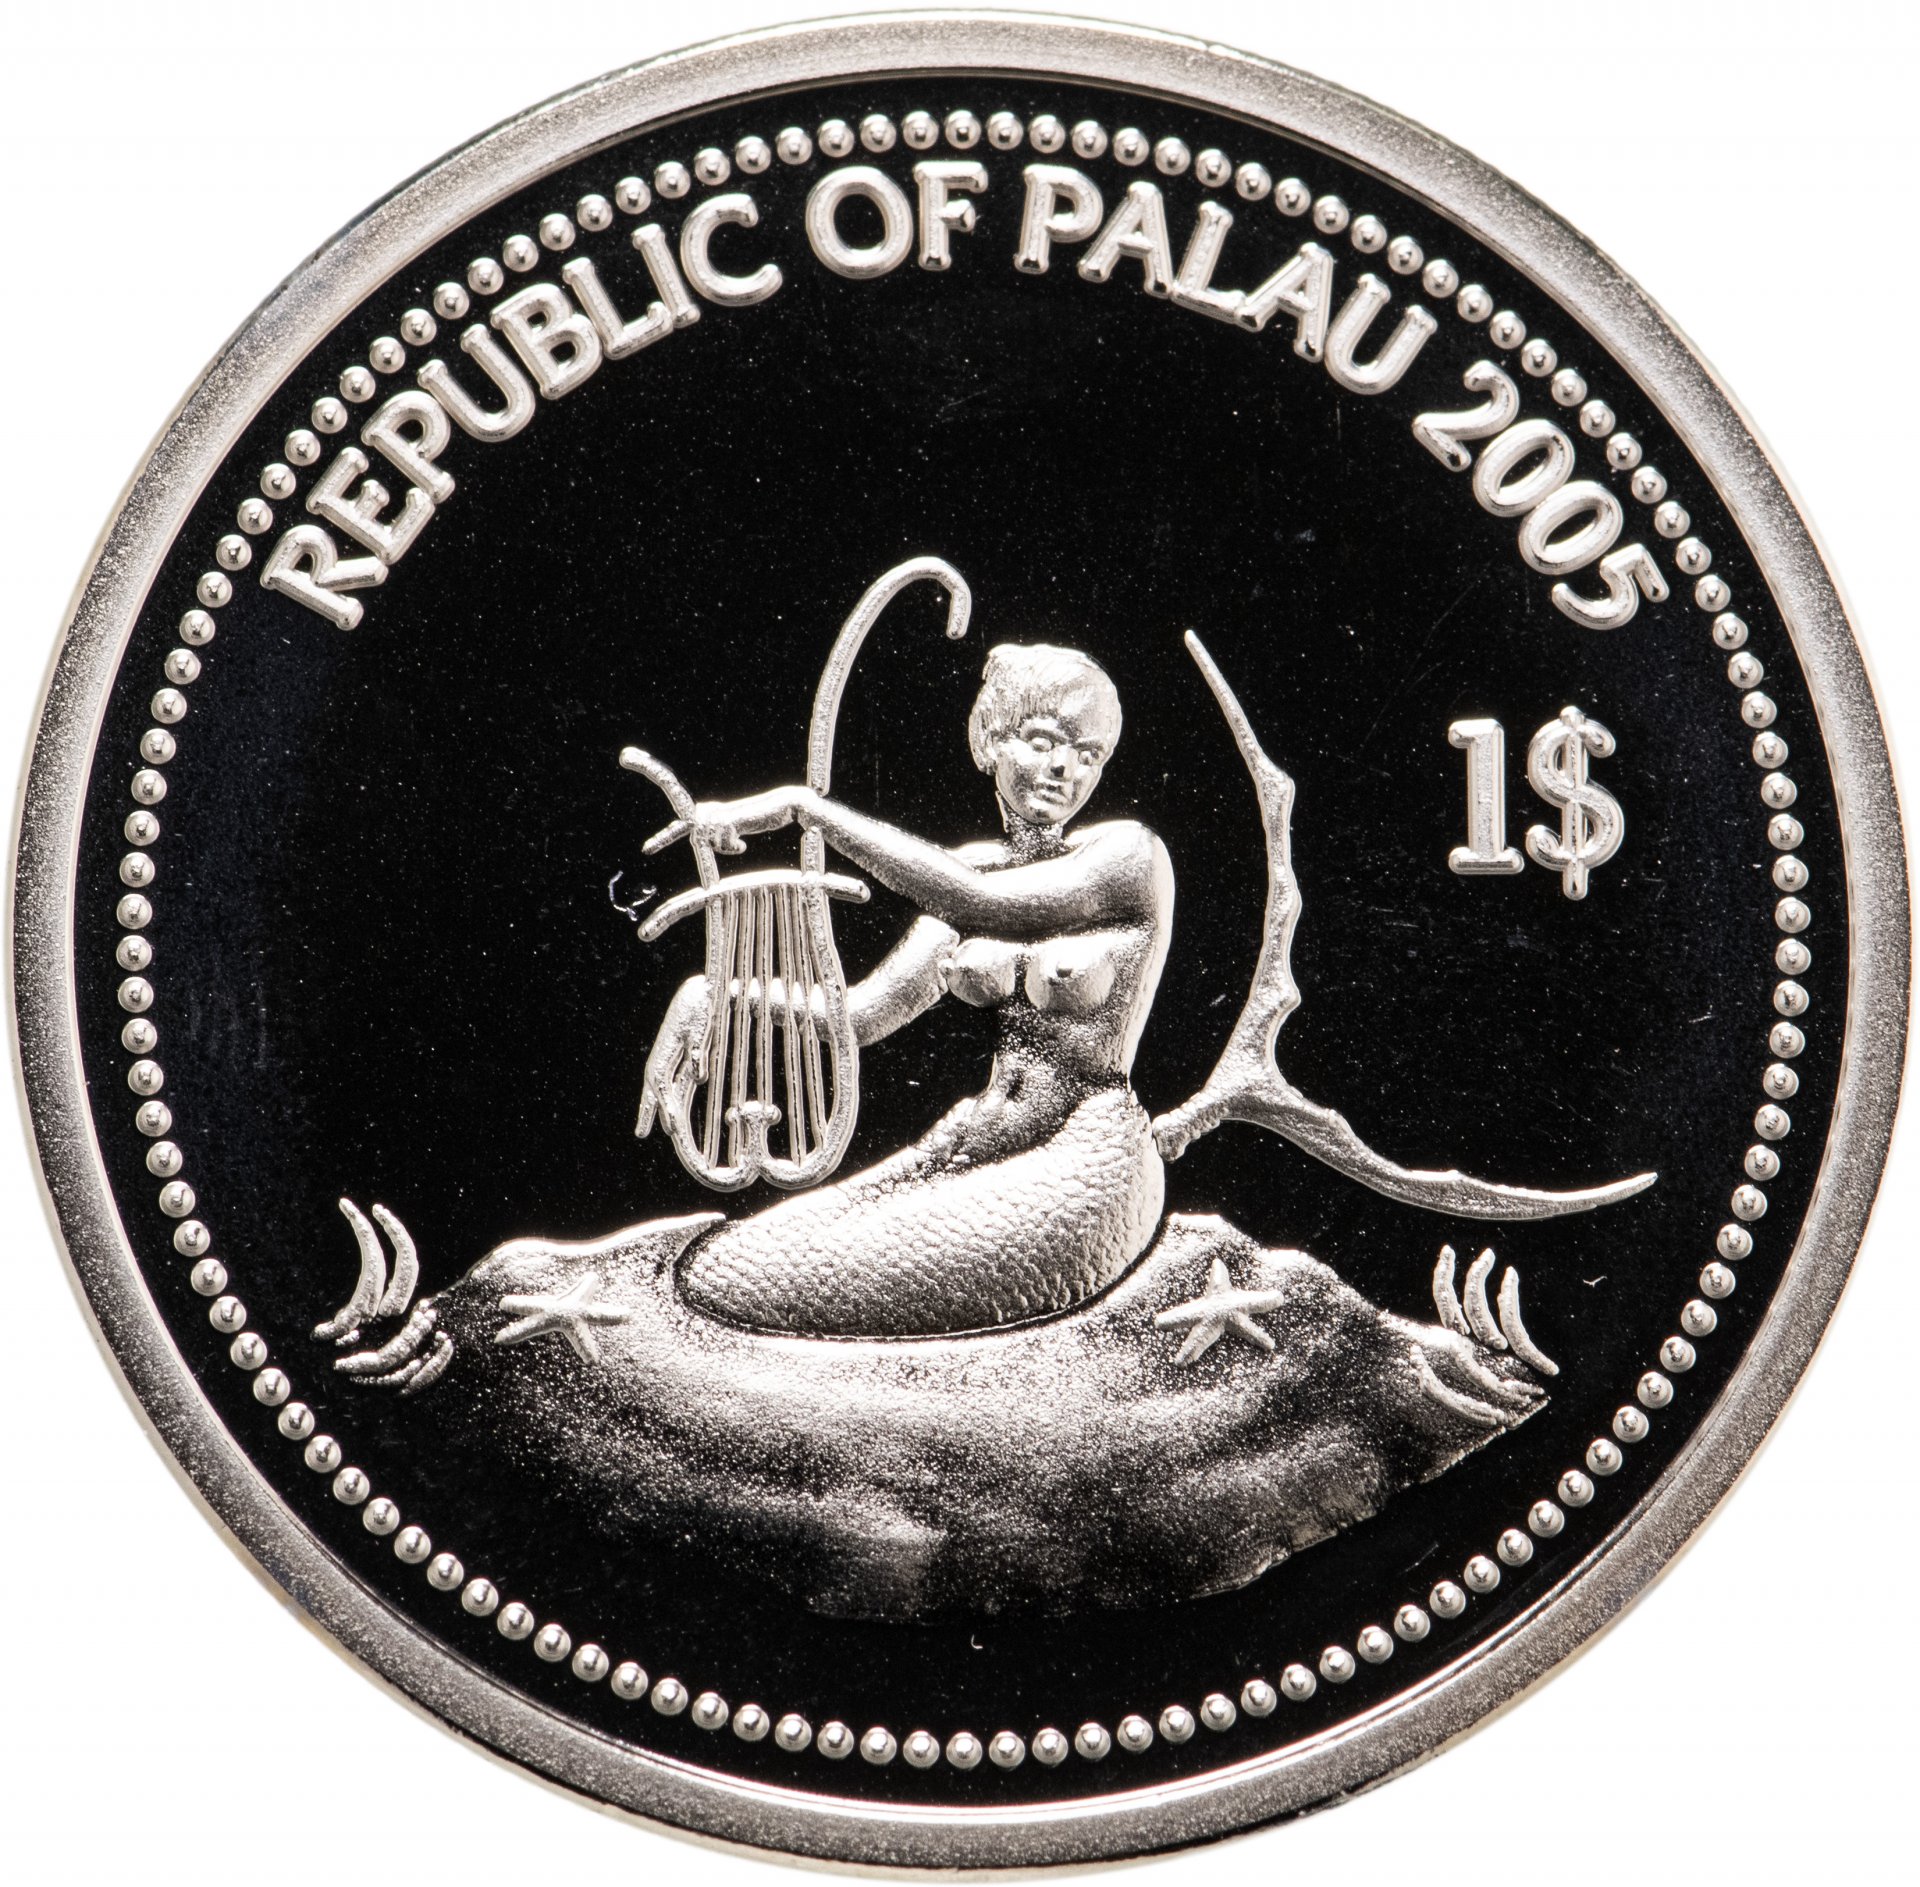 2005 долларов в рублях. Монеты Палау 1 доллар. Монеты Палау. Палау 1 доллар, 1993 защита морской жизни. 1 Доллар 2001 Палау Императорский ангел.